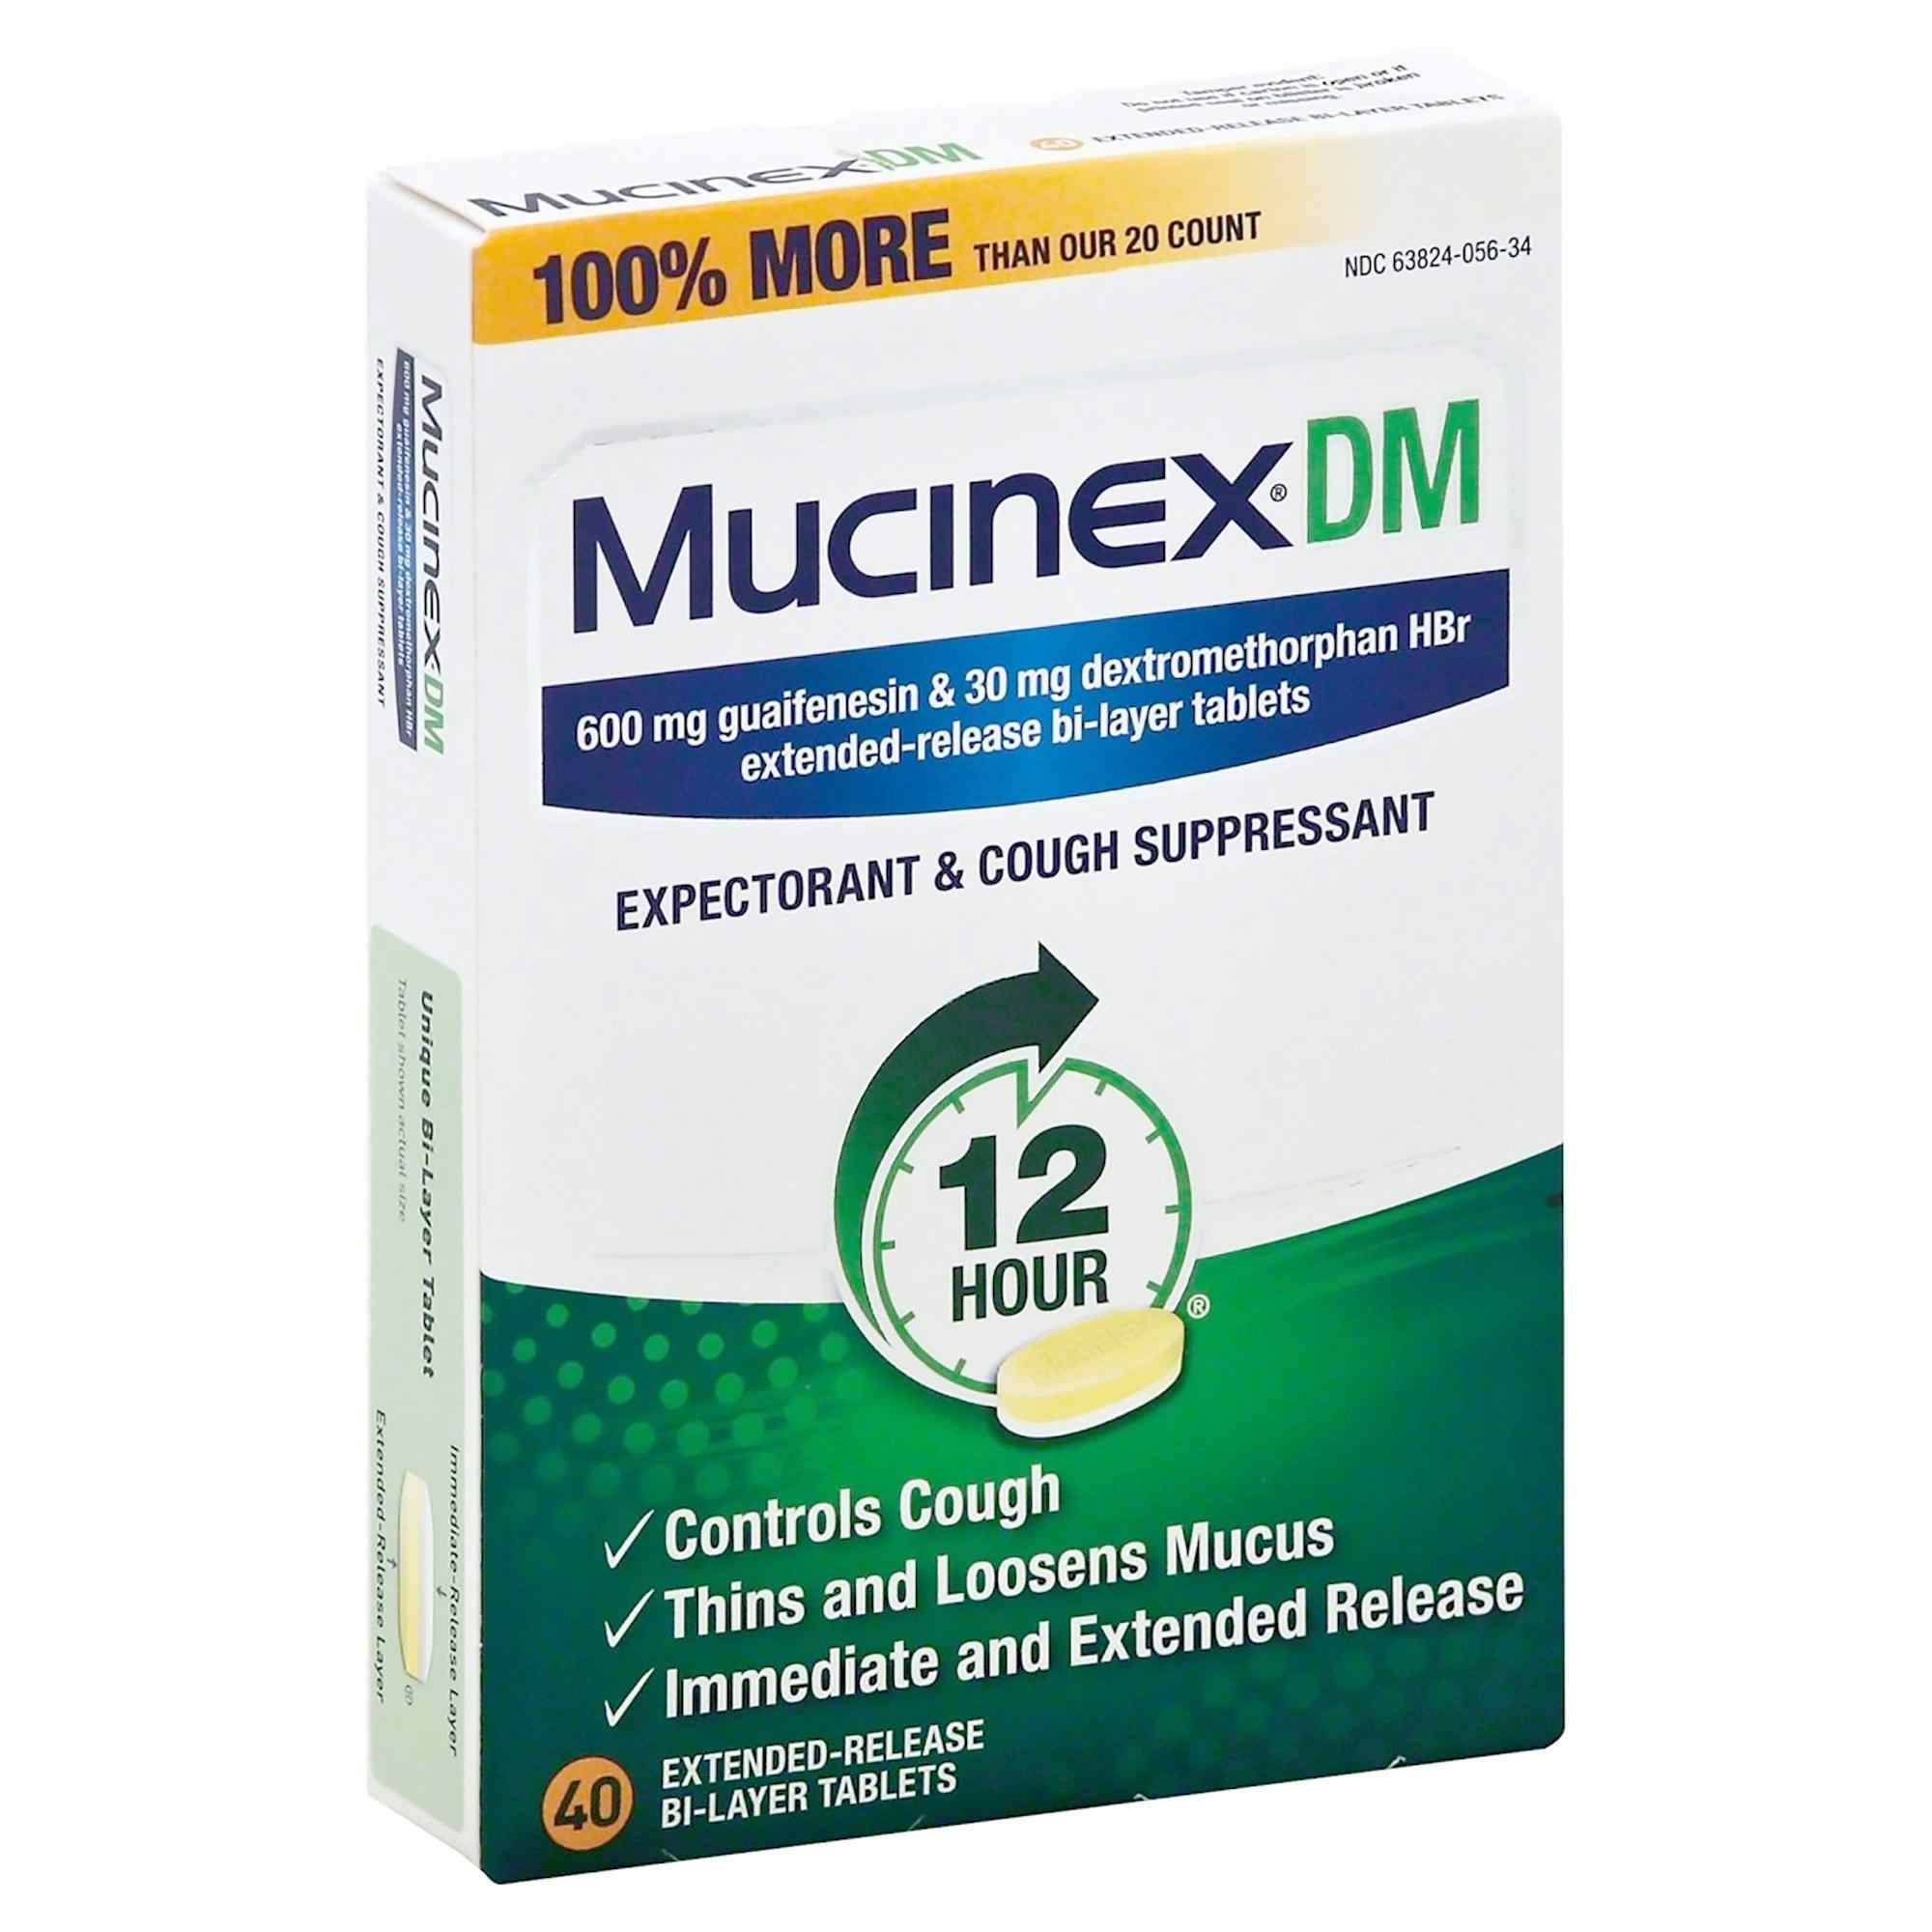 Mucinex DM Expectorant & Cough Suppressant, 600 mg